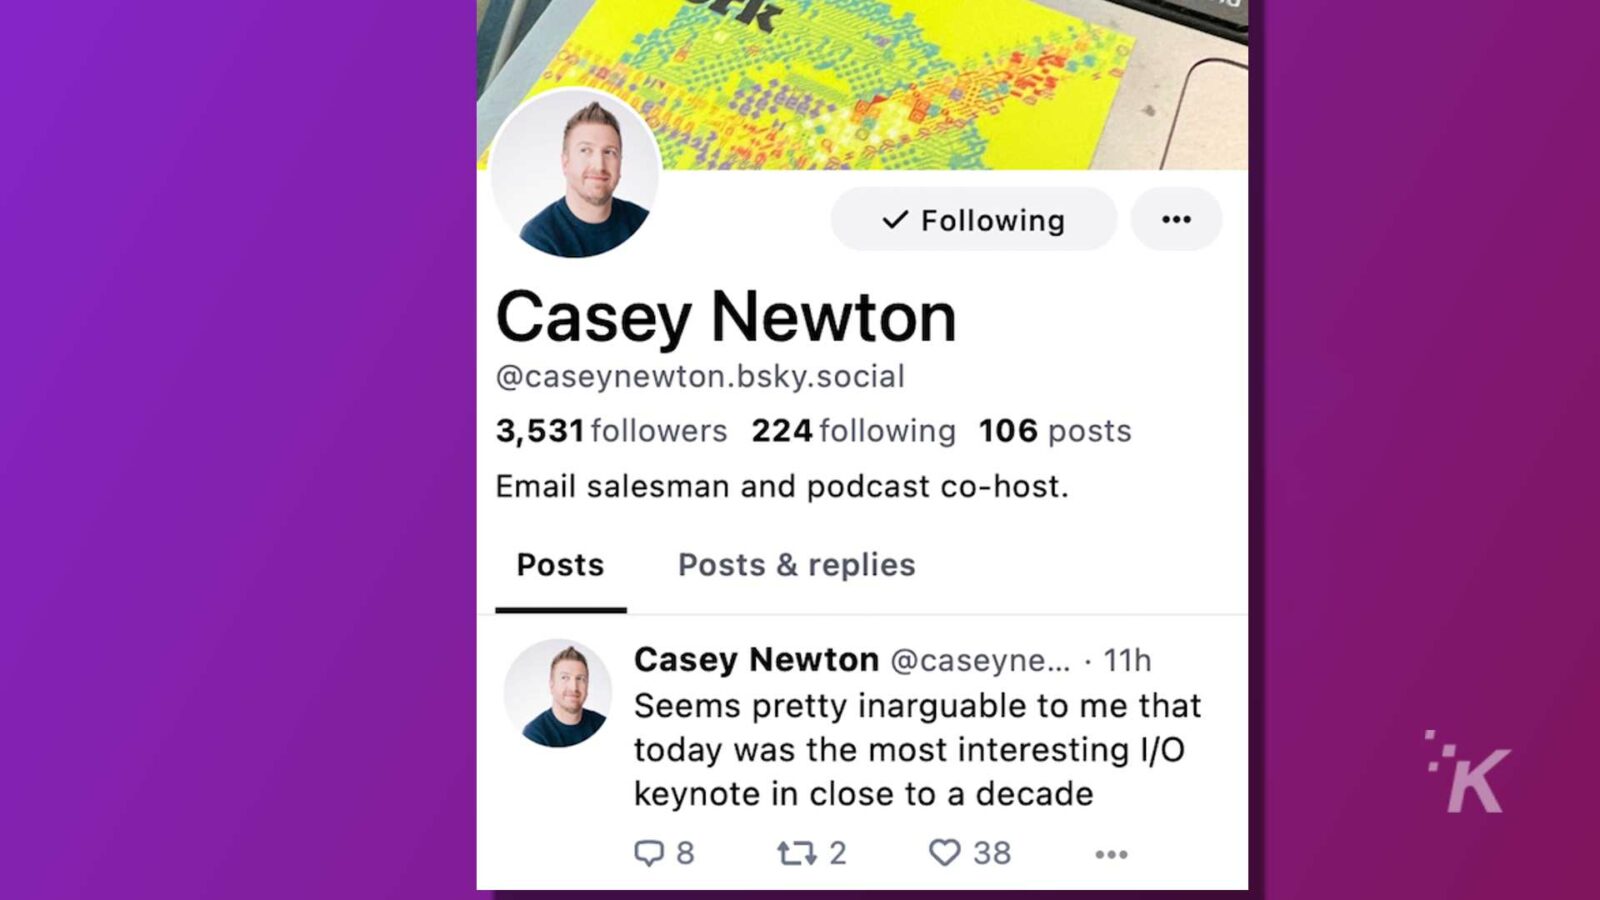 Casey Newton este vânzător, co-gazdă podcast și utilizator de rețele sociale, cu 3.531 de urmăritori, care își împărtășește opinia despre un eveniment recent. Text complet: V Urmăresc .. Casey Newton @caseynewton.bsky.social 3.531 de urmăritori 224 urmăritori 106 postări Vânzător de e-mail și co-gazdă podcast. Postări Postări și răspunsuri Casey Newton @caseyne ... . 11h Mi se pare destul de incontestabil că astăzi a fost cea mai interesantă intervenție I/O din aproape un deceniu t7 2 3 38 ...